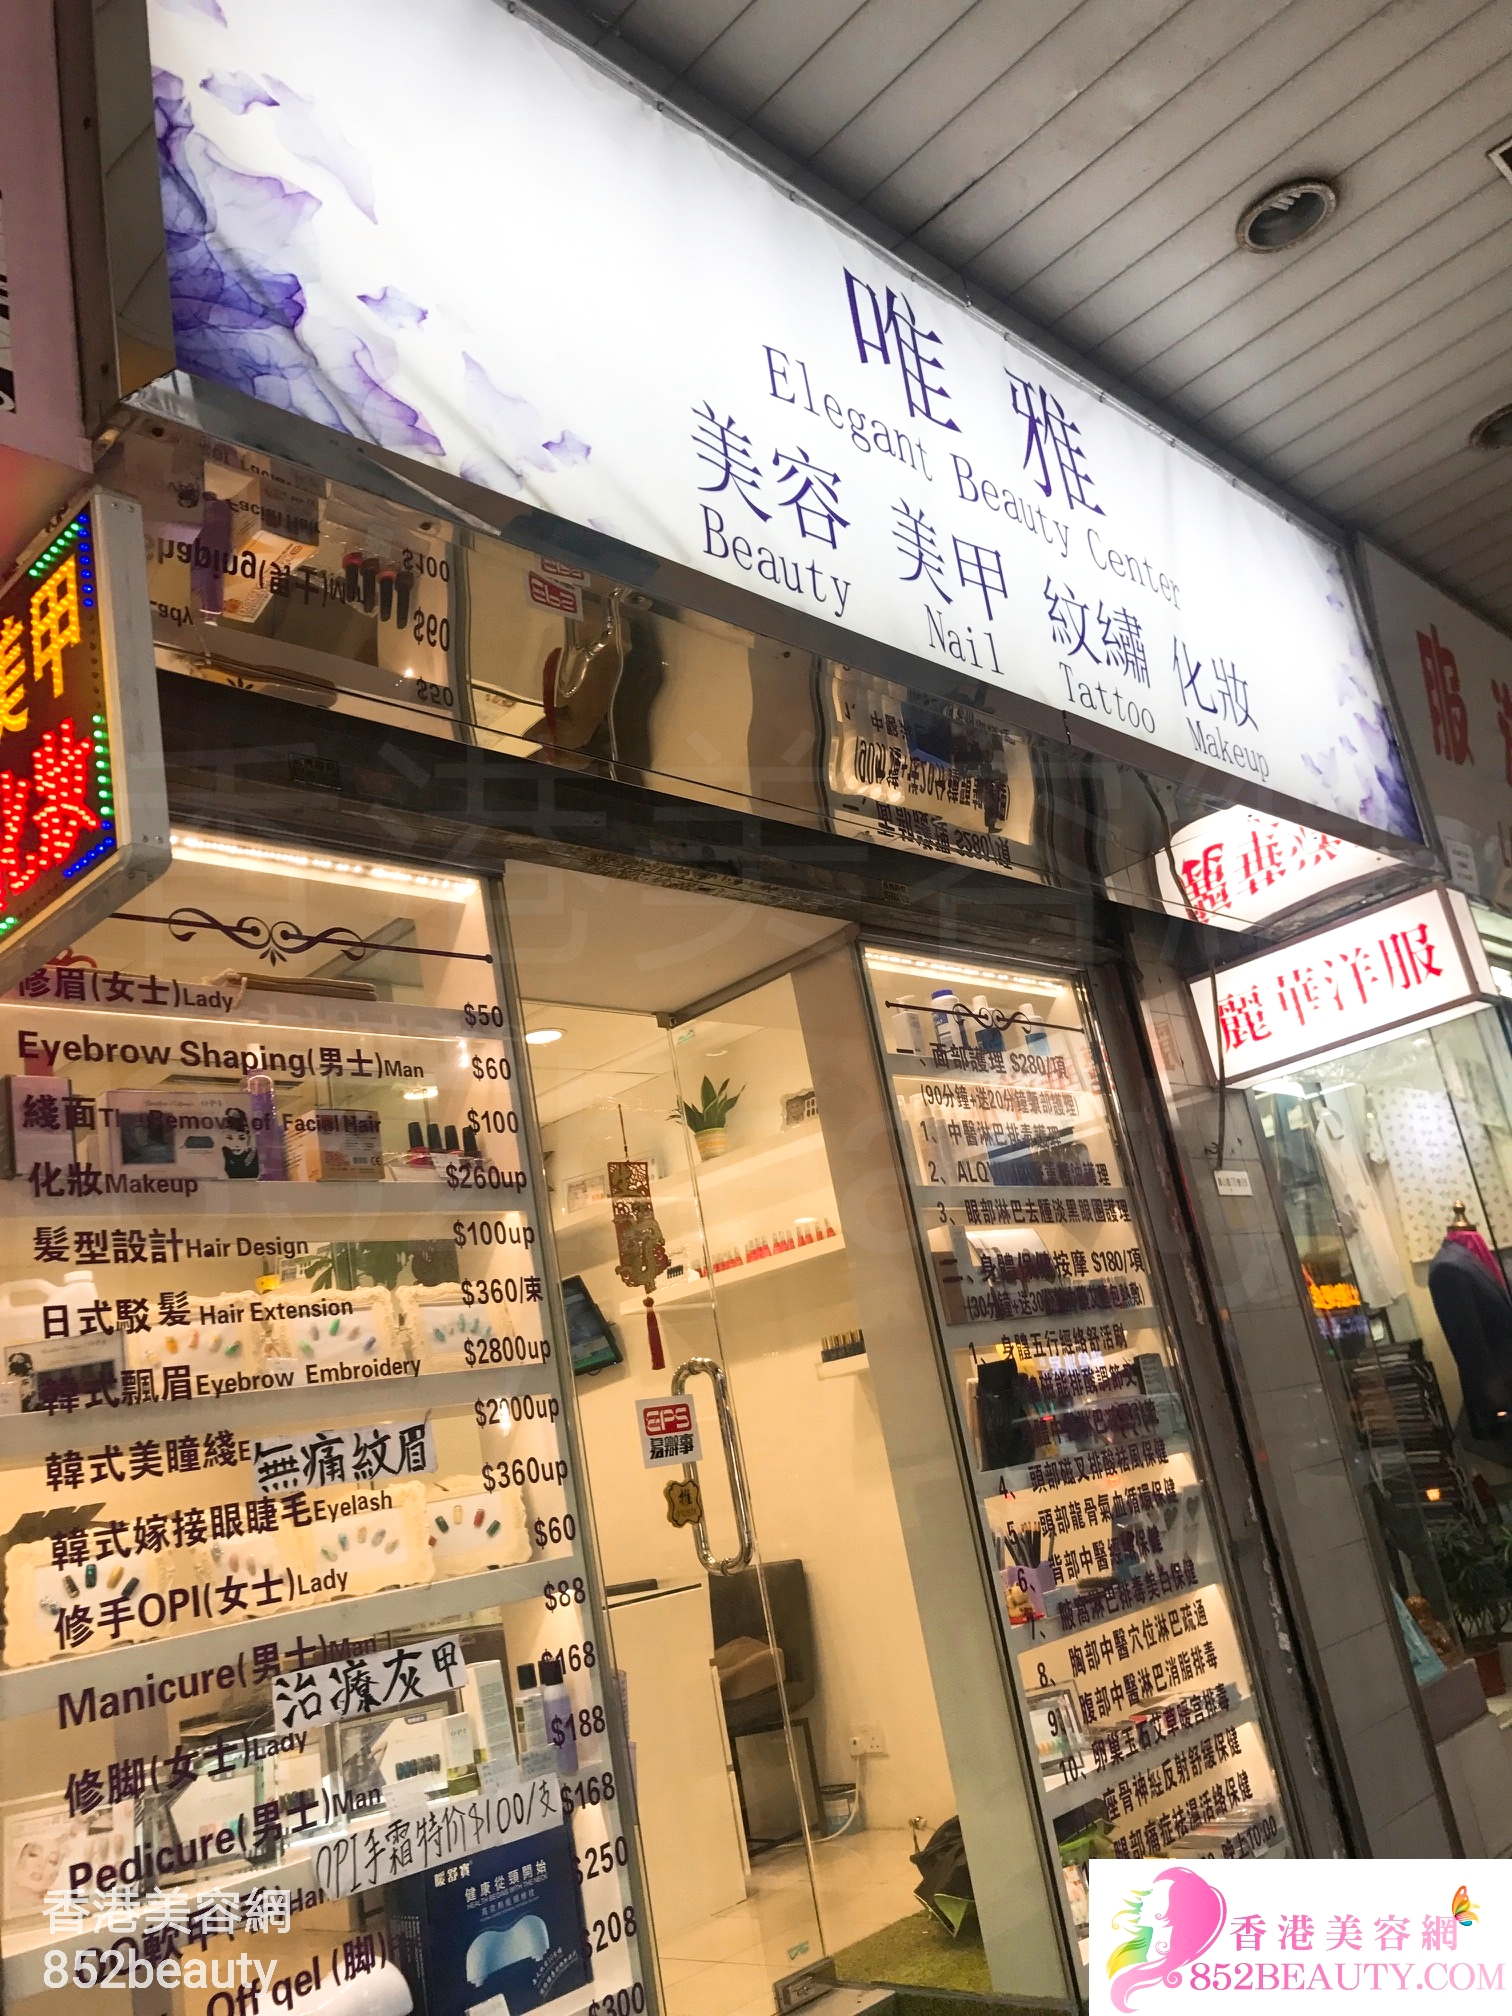 Men Grooming: 唯雅 Elegant Beauty Center